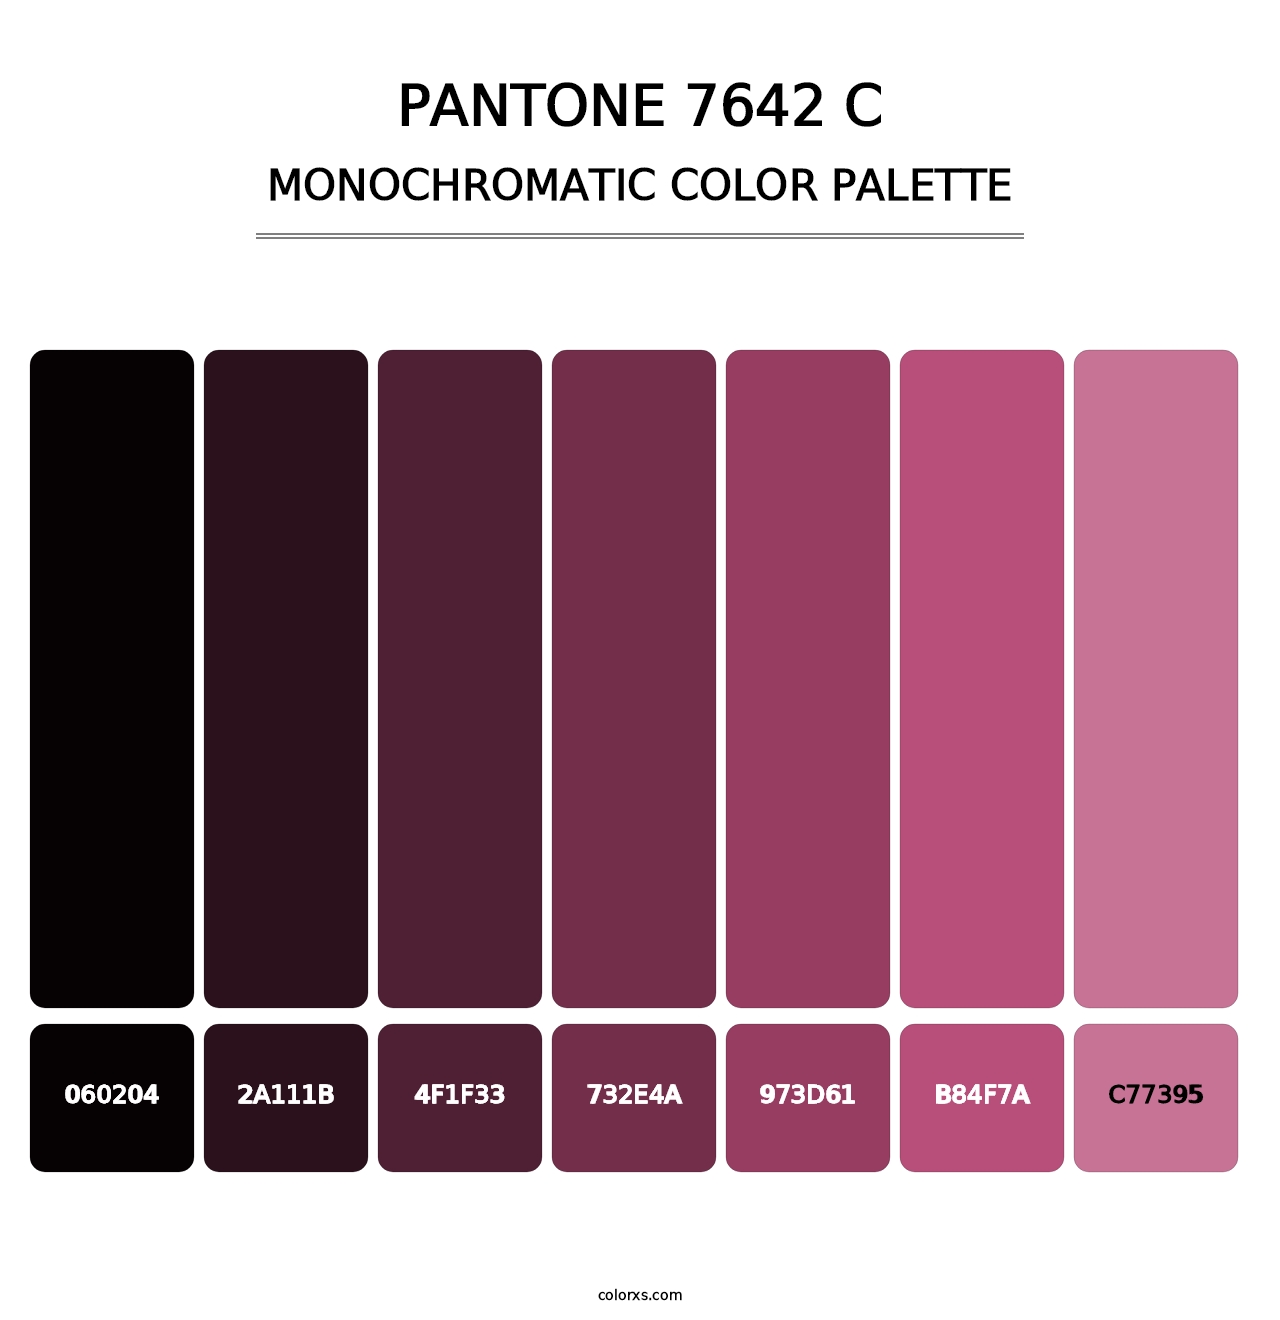 PANTONE 7642 C - Monochromatic Color Palette